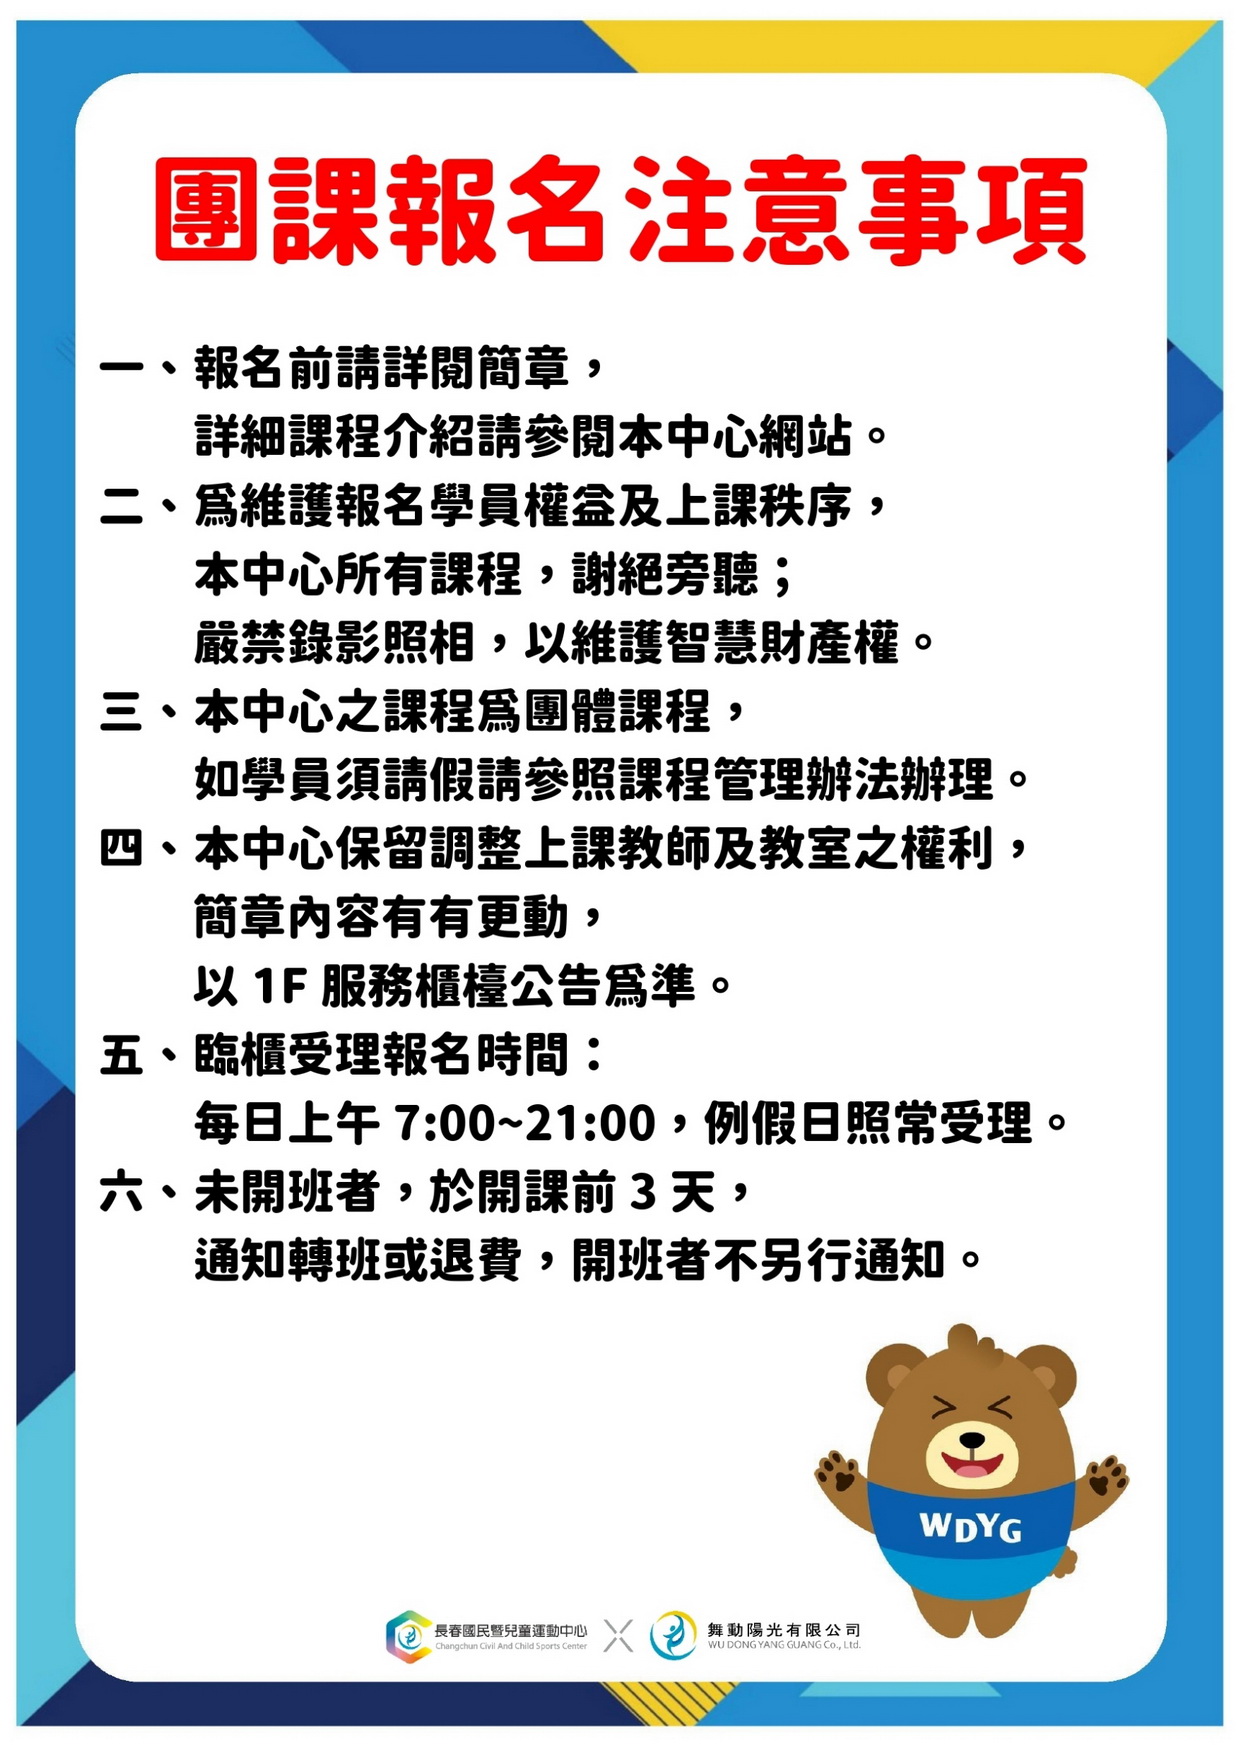 團課報名注意事項及相關規定 DM（JPG檔，詳細文字說明如下述）@長春國民運動中心